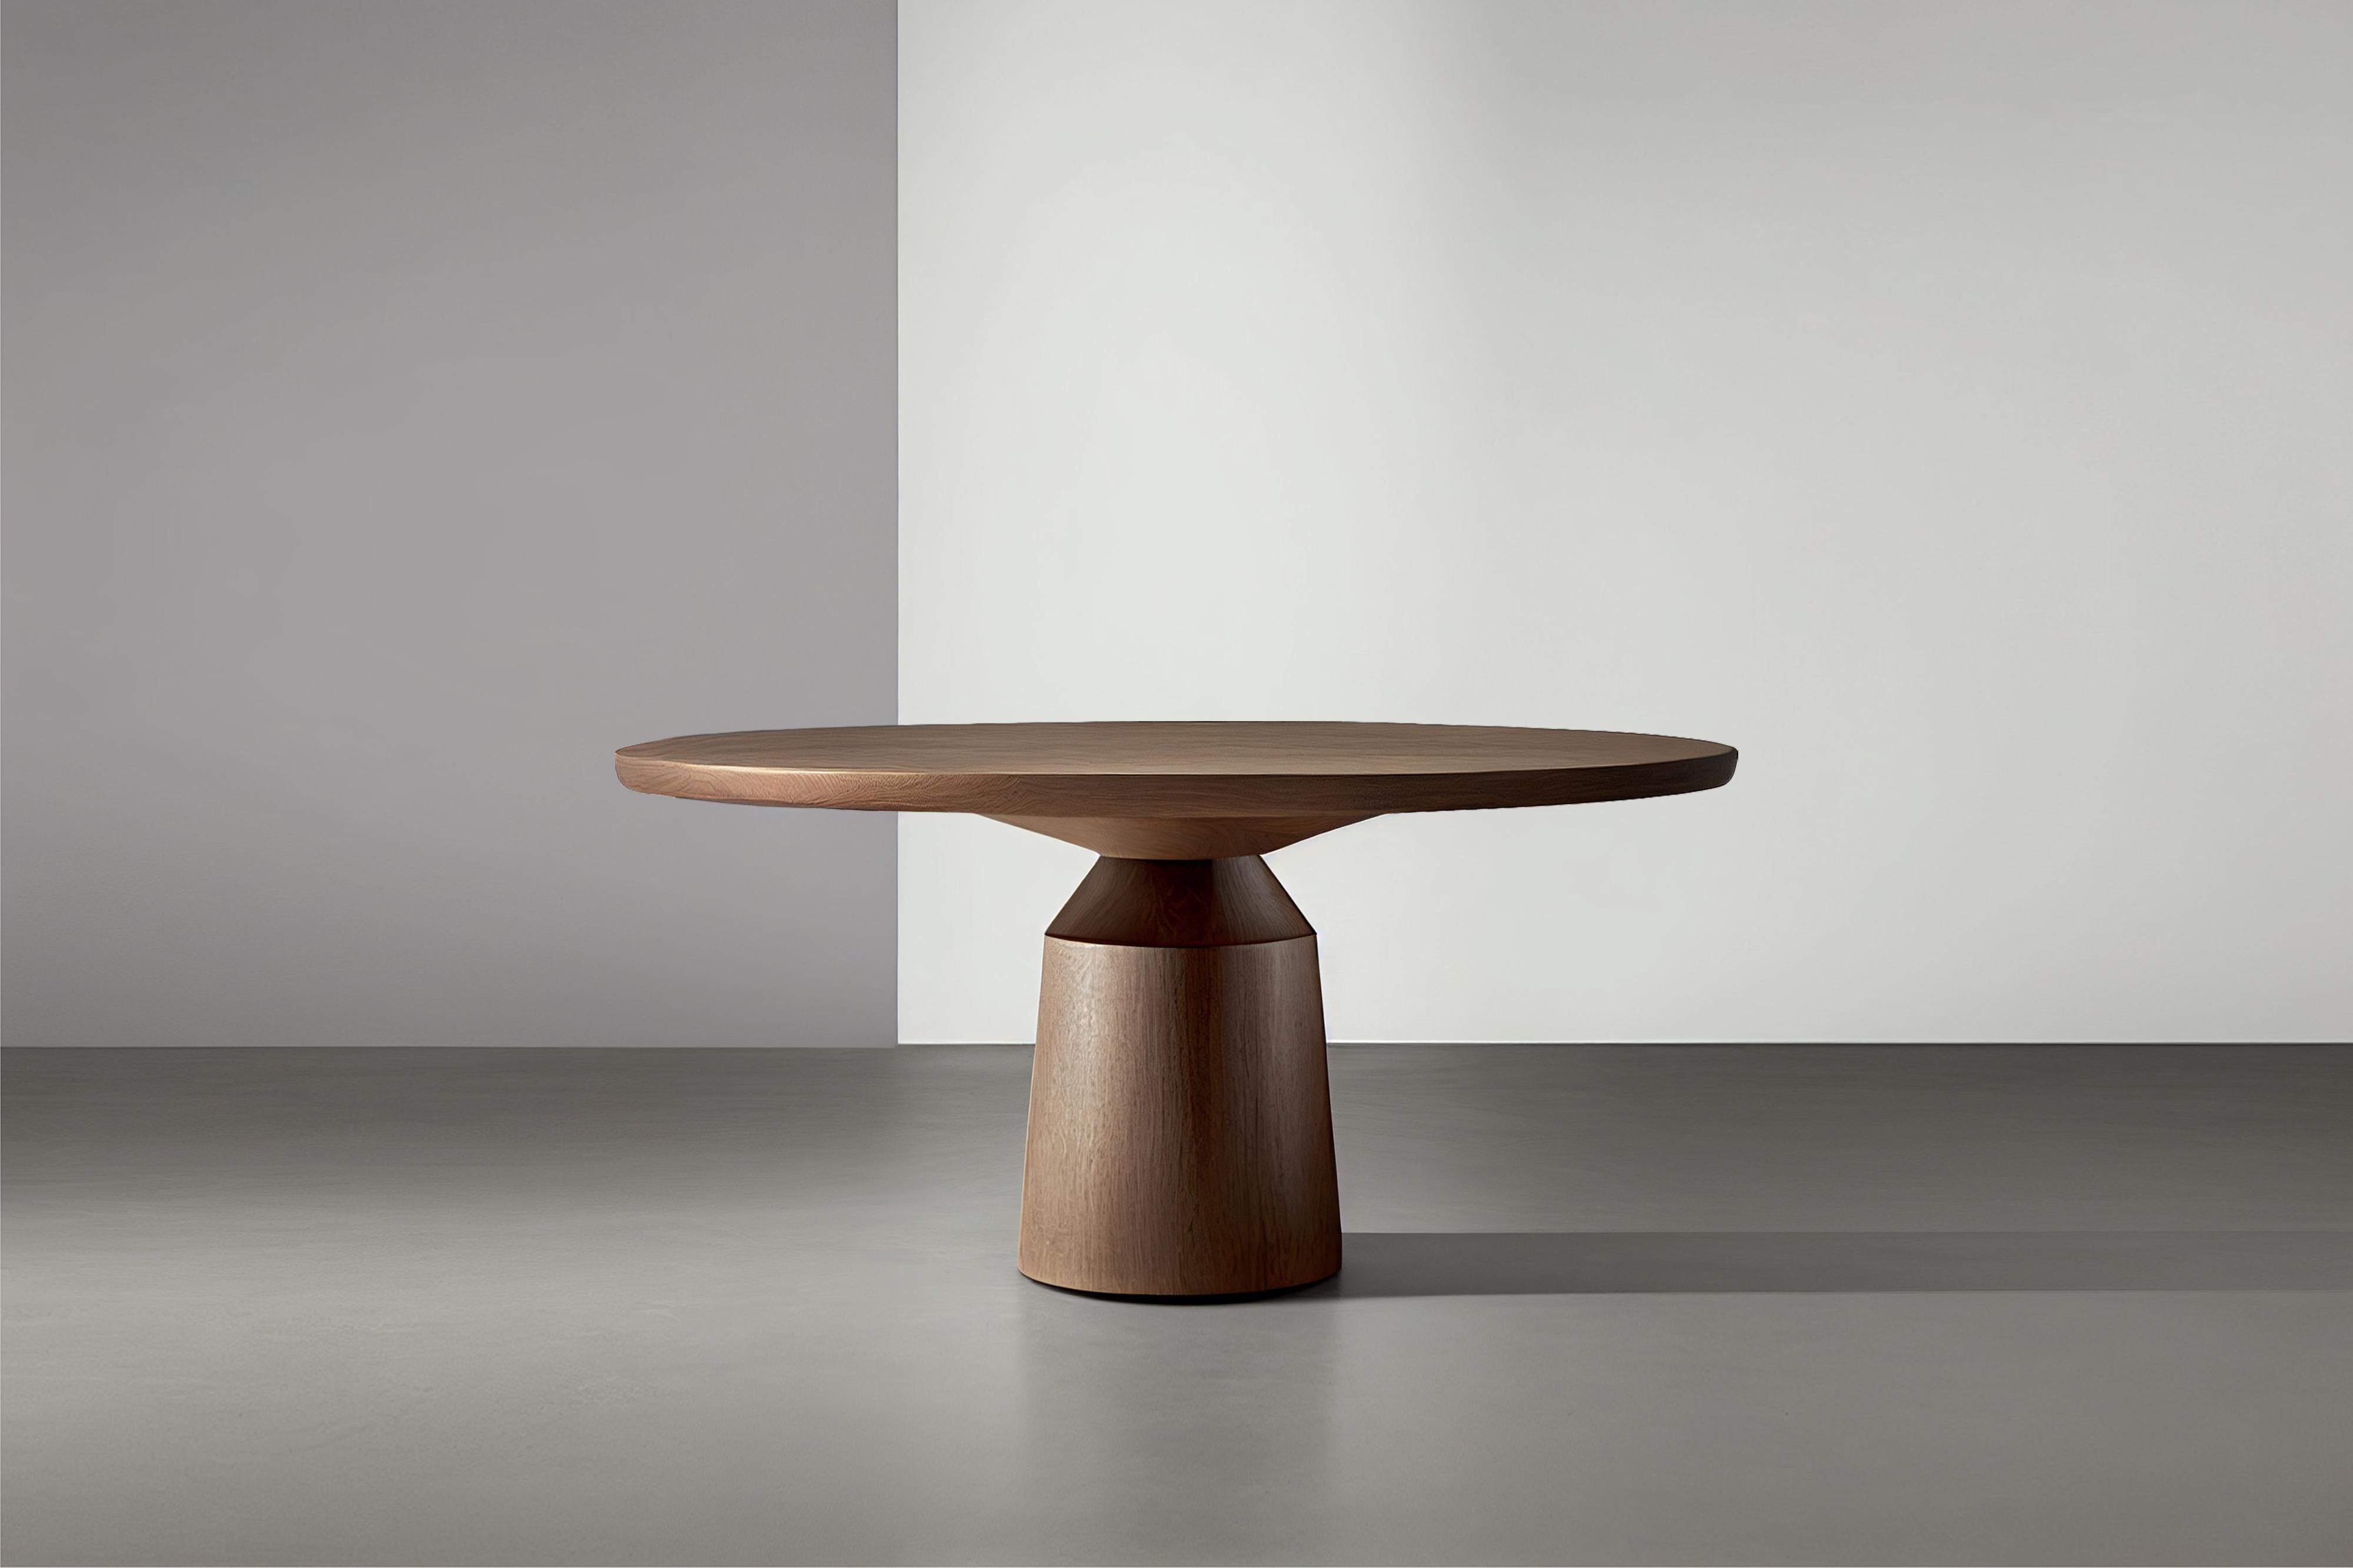 Moka Esstisch, Runder Tisch für vier Personen von NONO 

Der Moka Dining Table ist eine skulpturale Esstisch-Kollektion, die von der kultigen italienischen Mokkakanne inspiriert ist. Die aus Massivholz gefertigten, zeitgenössischen Formen sind ein